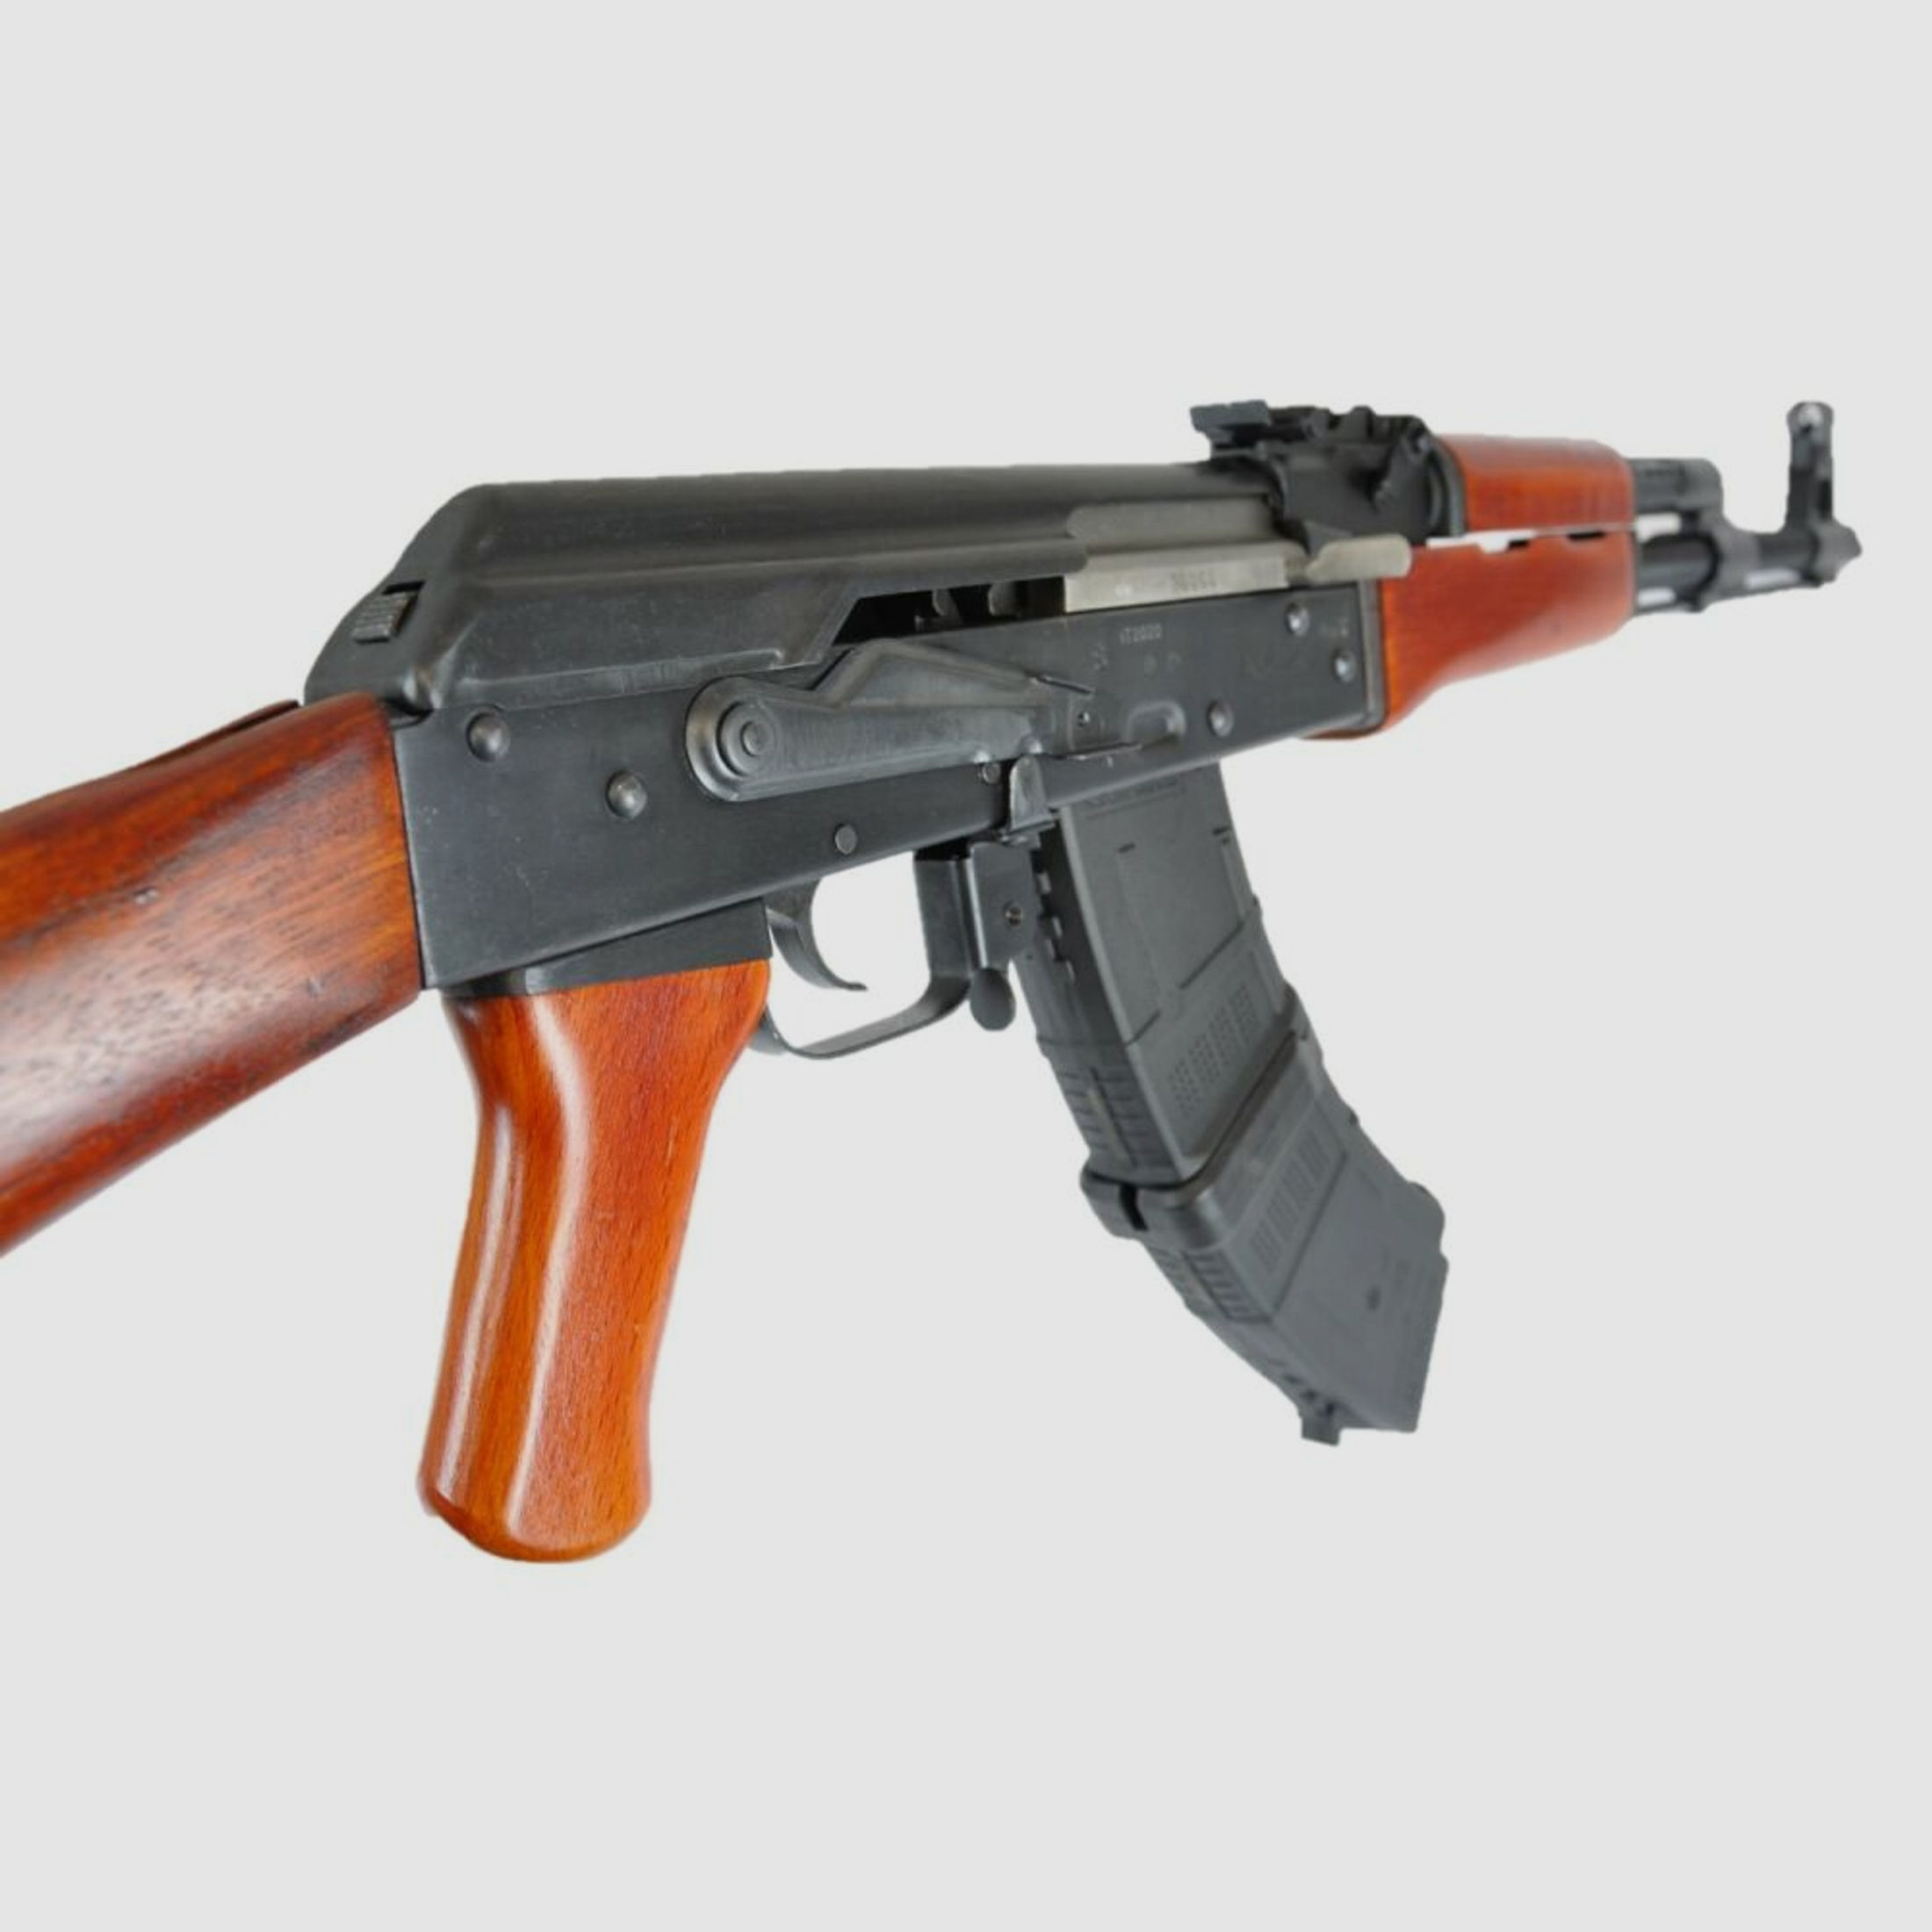 SDM AK	 47